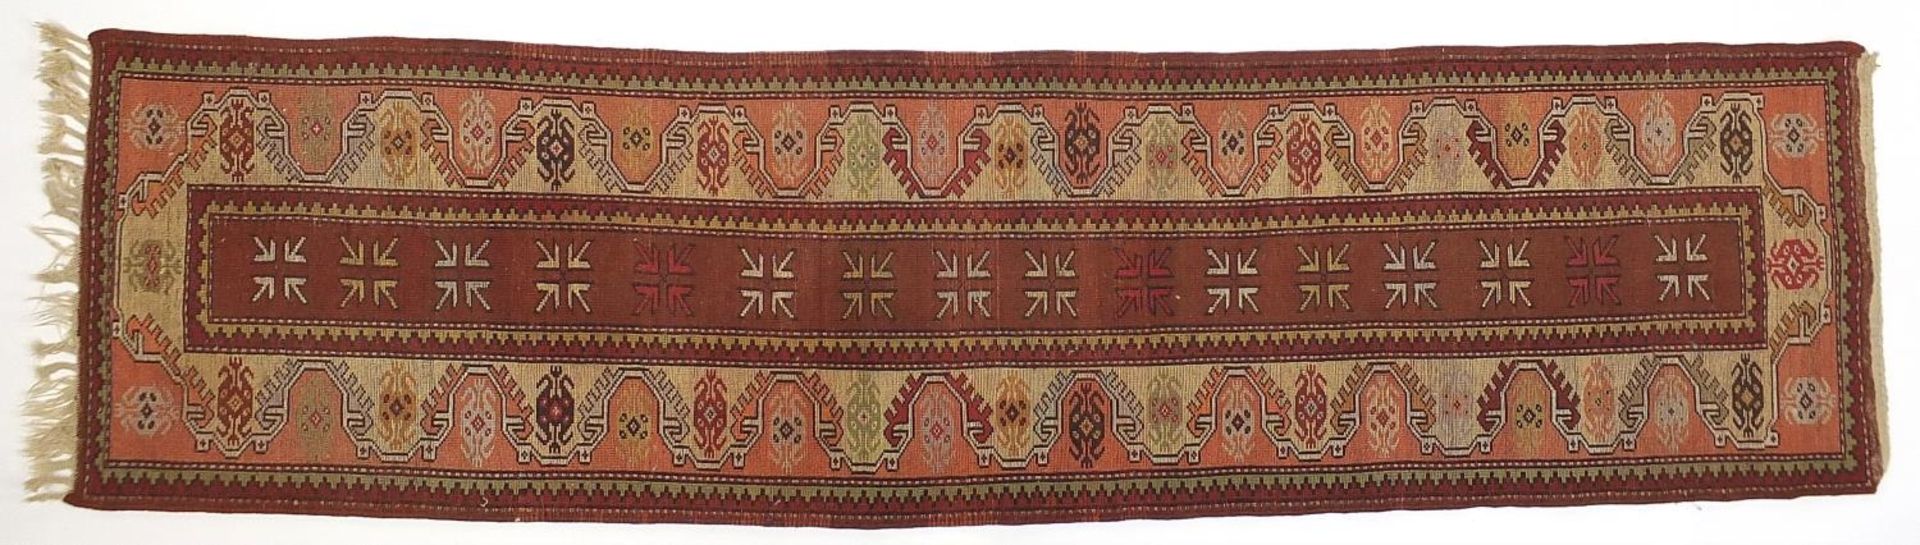 Rectangular Middle Eastern carpet runner having and all over geometric design, 275cm x 75cm - Image 4 of 5